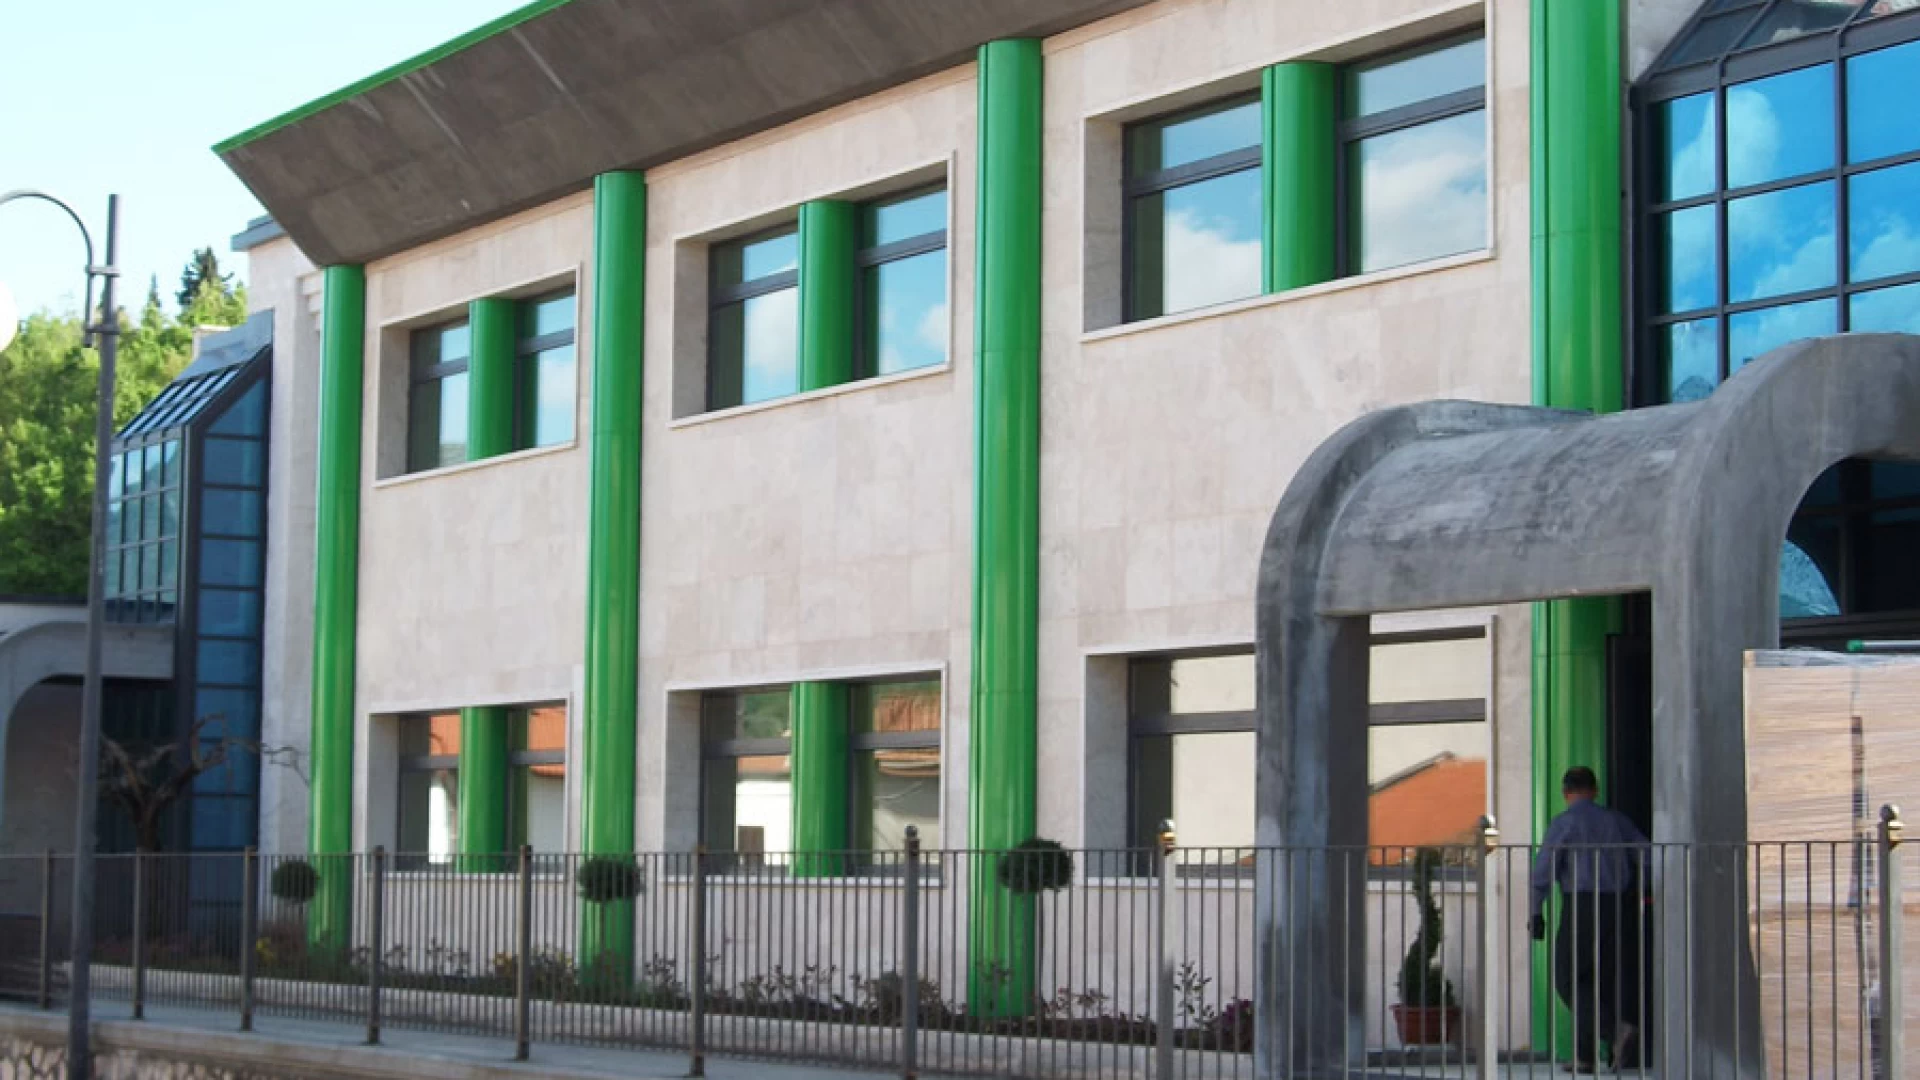 Colli a Volturno: lunedì 1 ottobre l’inaugurazione del Secondo Corpo di Fabbrica dell’edificio scolastico. Mensa e palestra per gli alunni dell’Istituto Comprensivo.